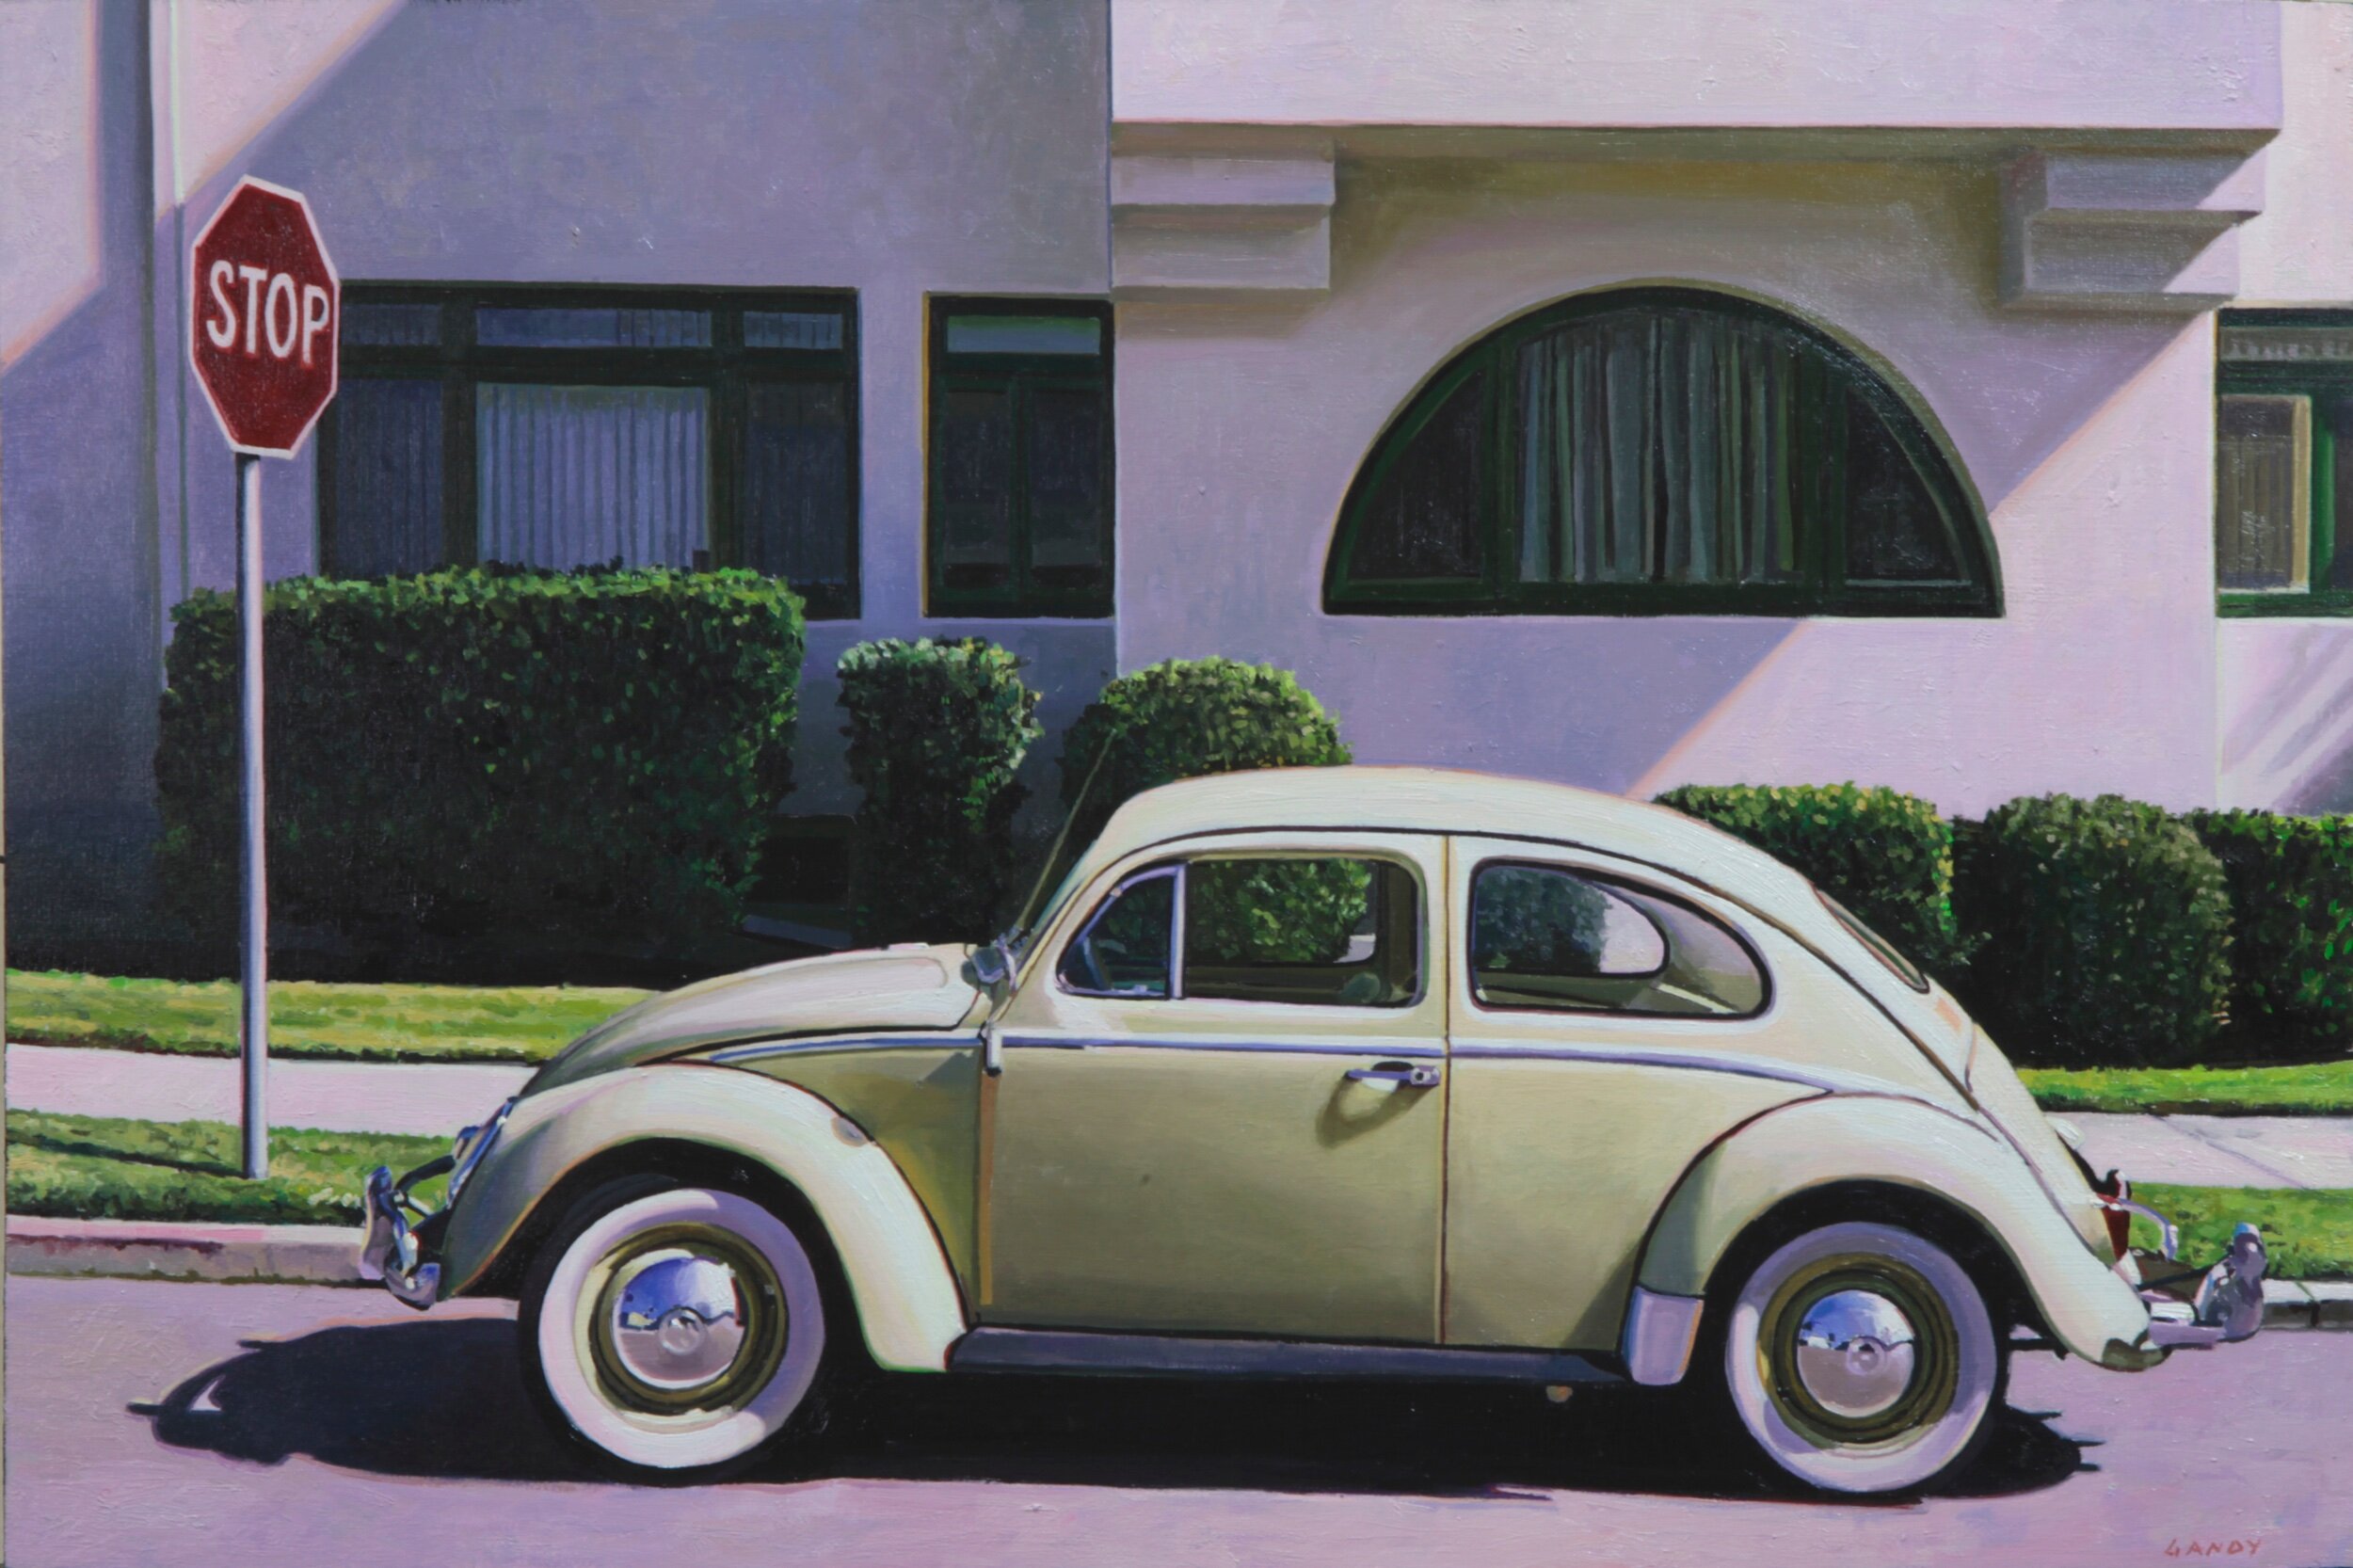 VW Bug in San Diego by Greg Gandy